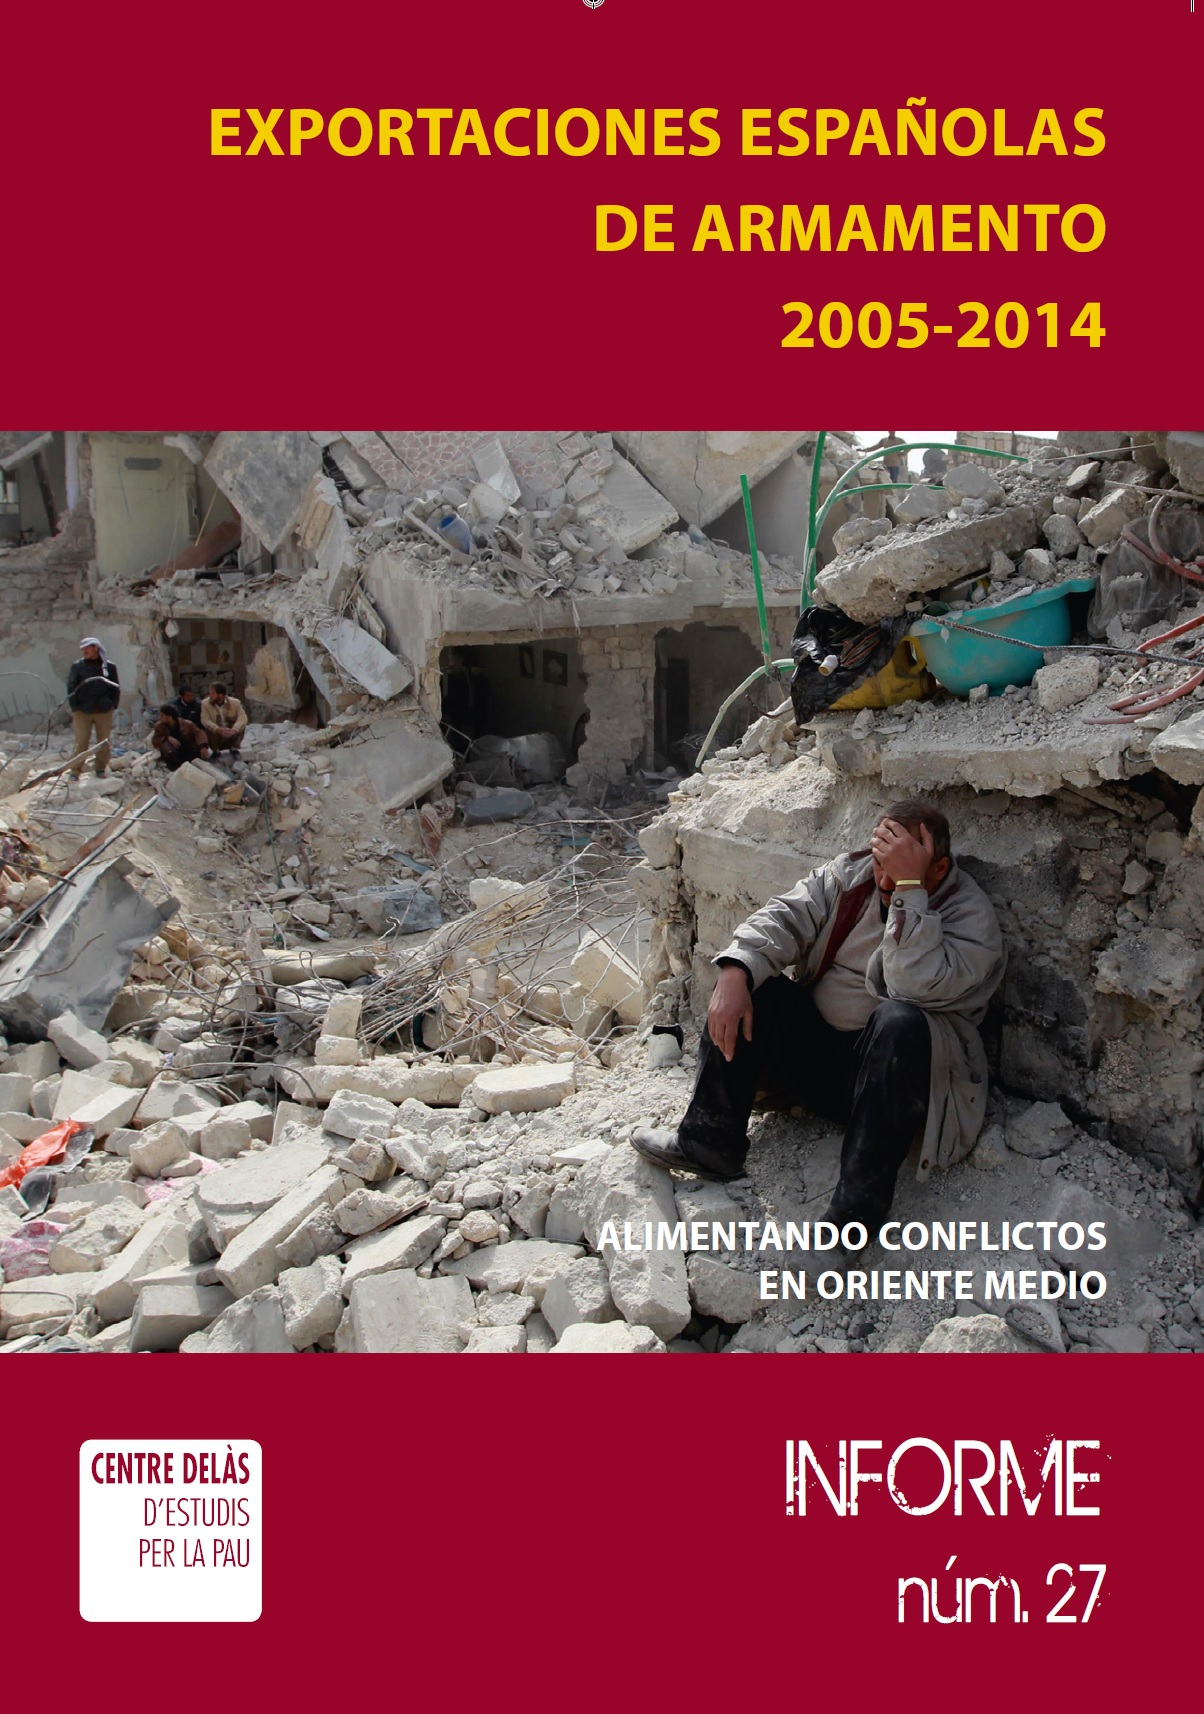 Nuevo informe de las exportaciones de armas españolas: alimentando conflictos en Oriente Medio